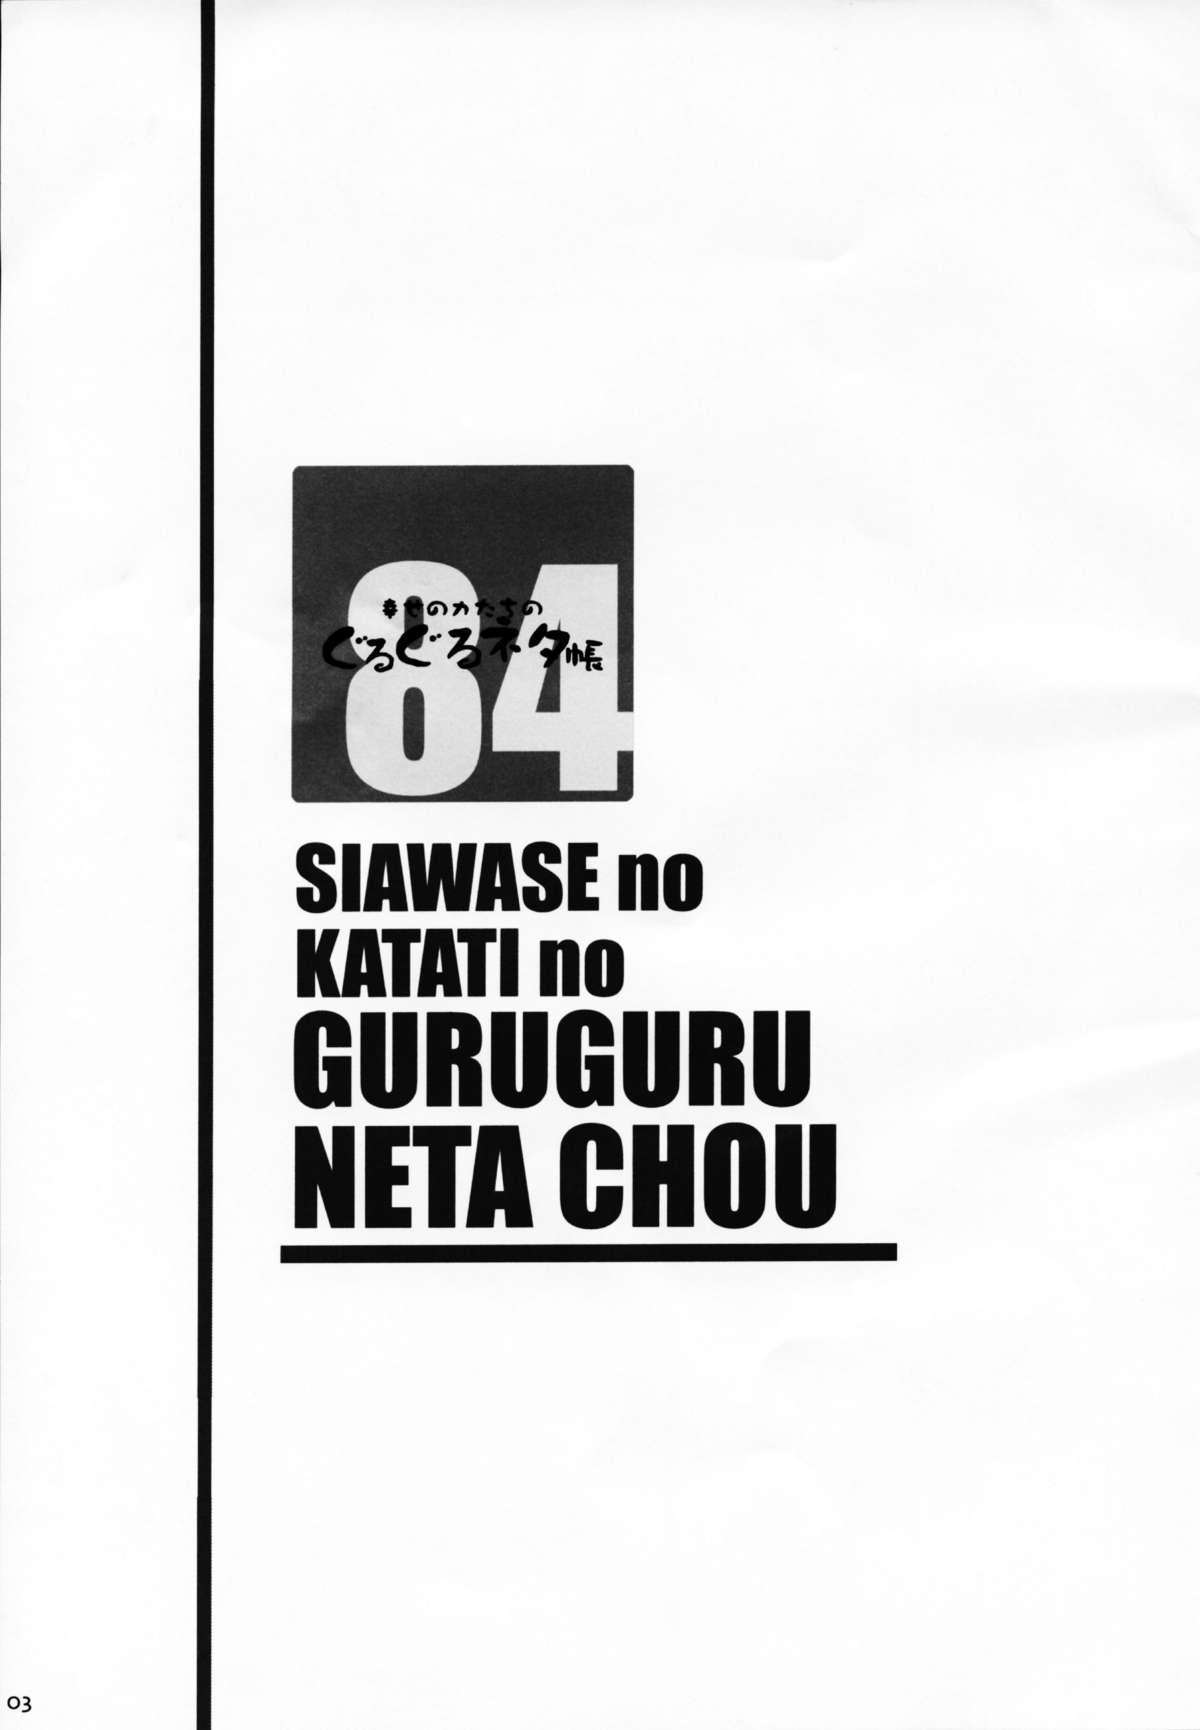 Shiawase no Katachi no Guruguru Netachou 84 2